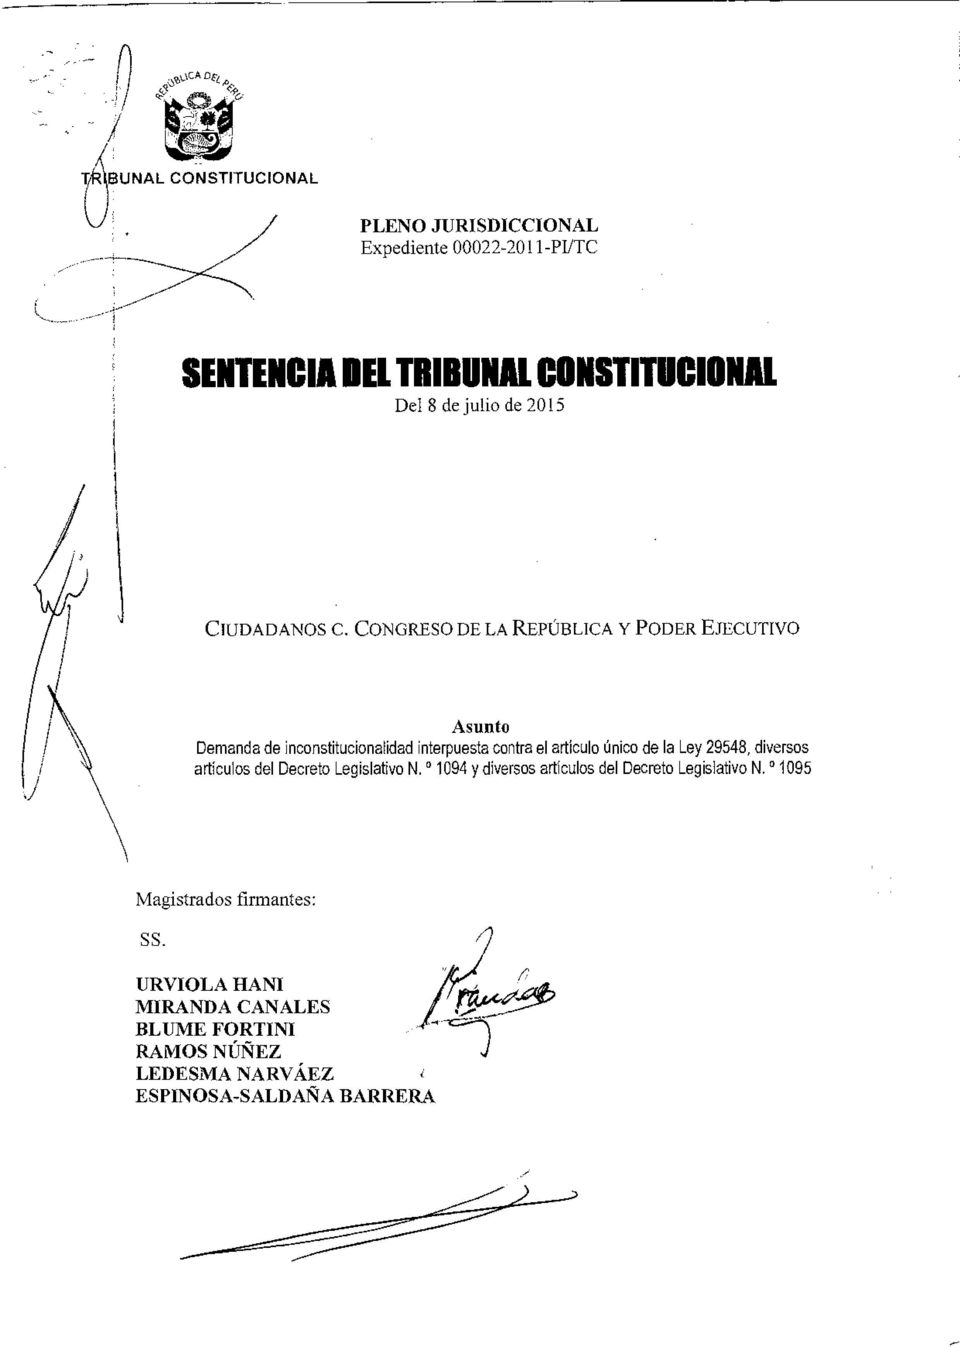 CONGRESO DE LA REPÚBLICA Y PODER EJECUTIVO Asunto Demanda de inconstitucionalidad interpuesta contra el articulo único de la Ley